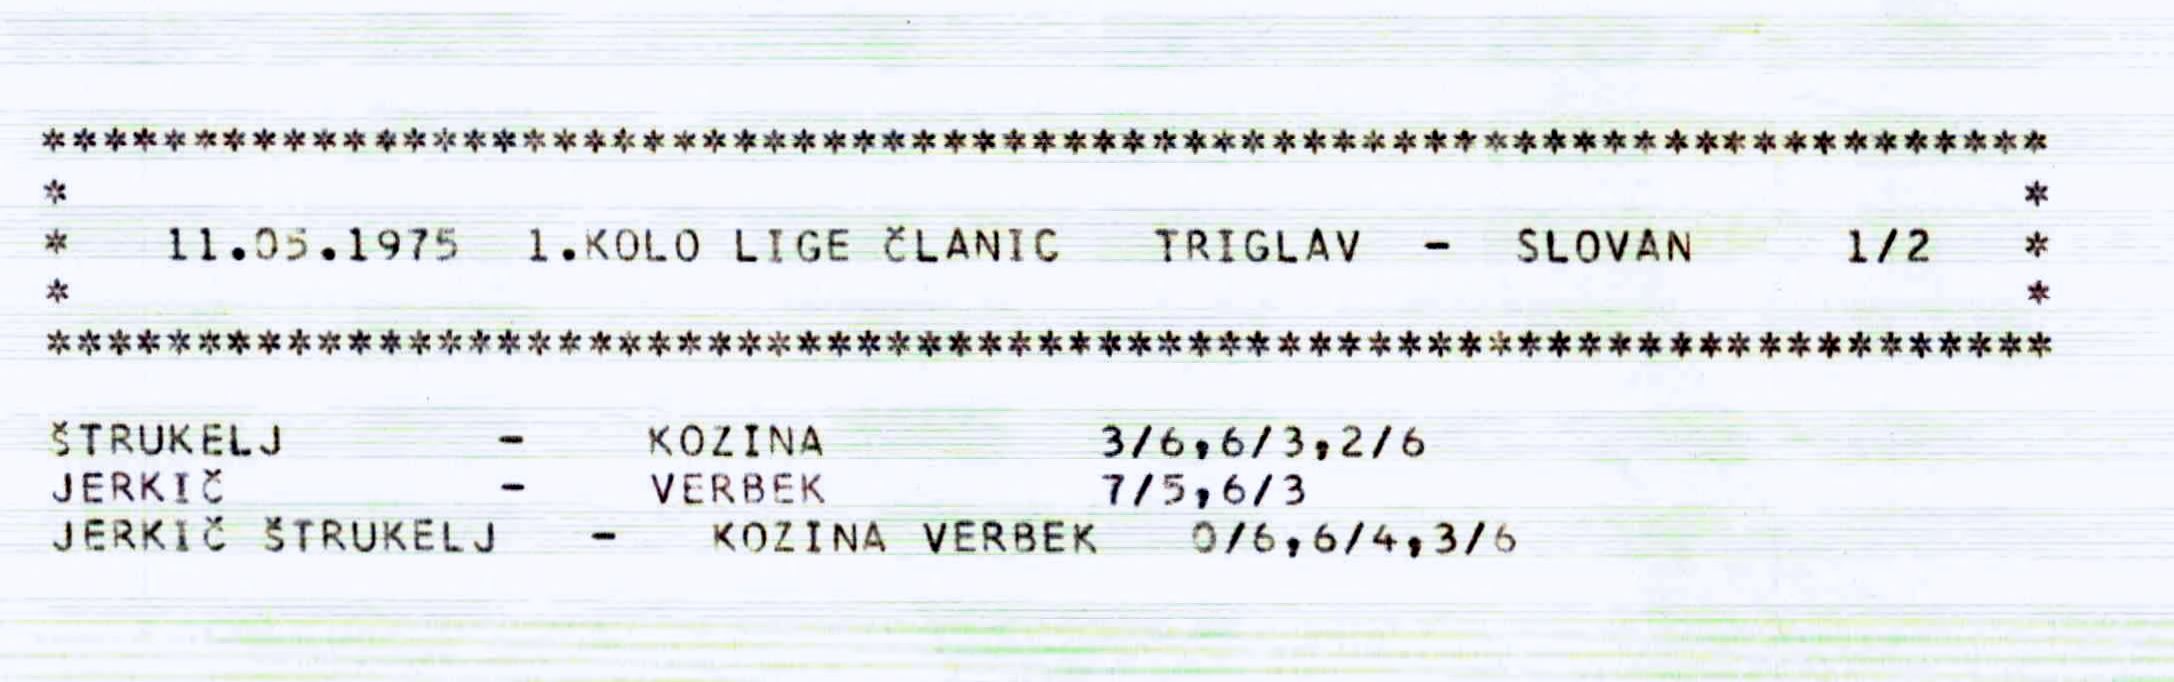 11.5.1975_Slovenska_liga_Triglav-Slovan_1-2_clanice.JPG